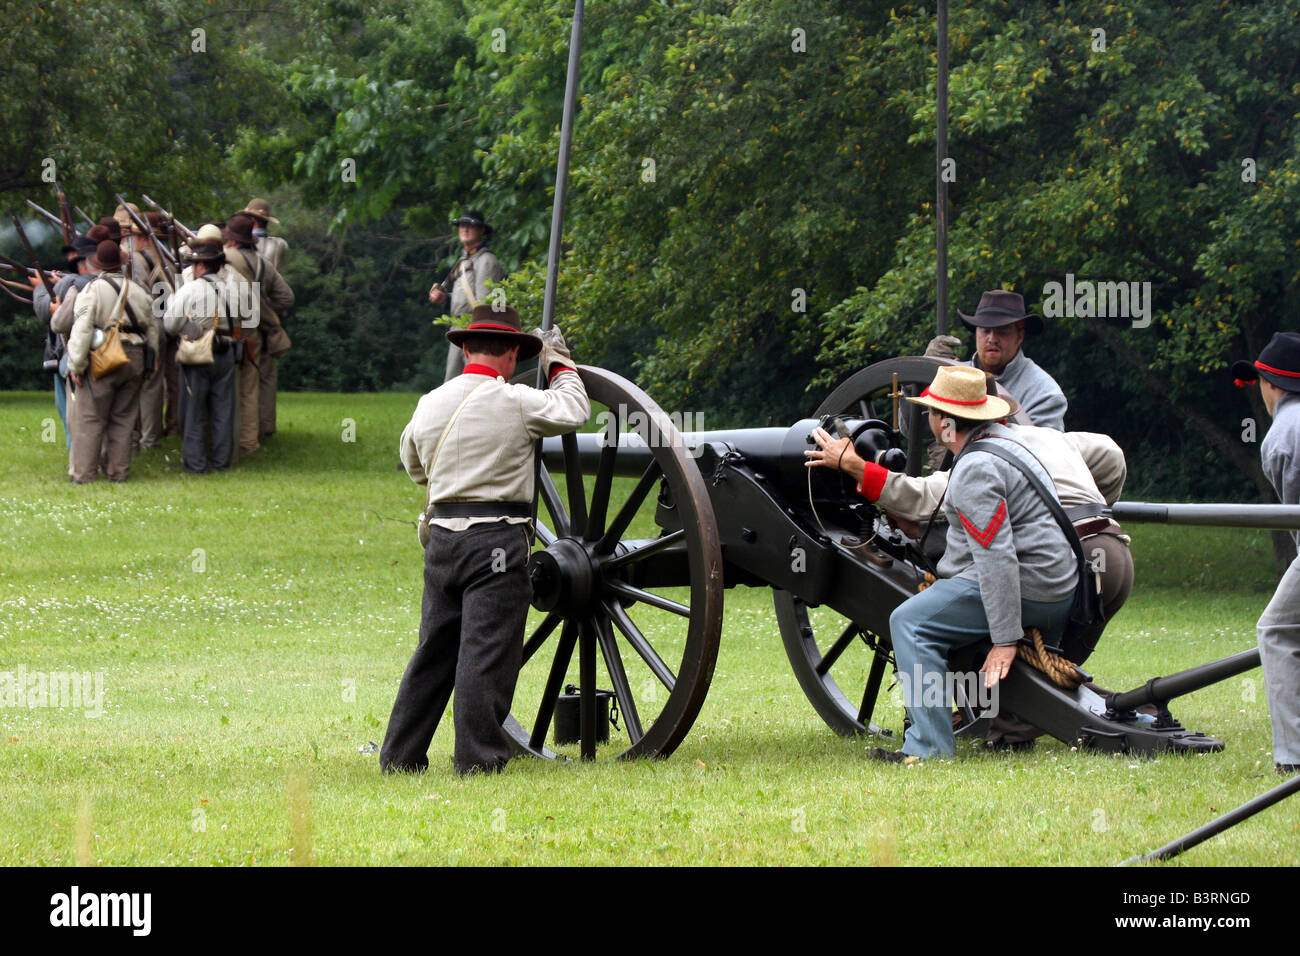 Les soldats confédérés tirant un canon au cours d'une bataille dans une guerre civile Reenactment Campement Banque D'Images